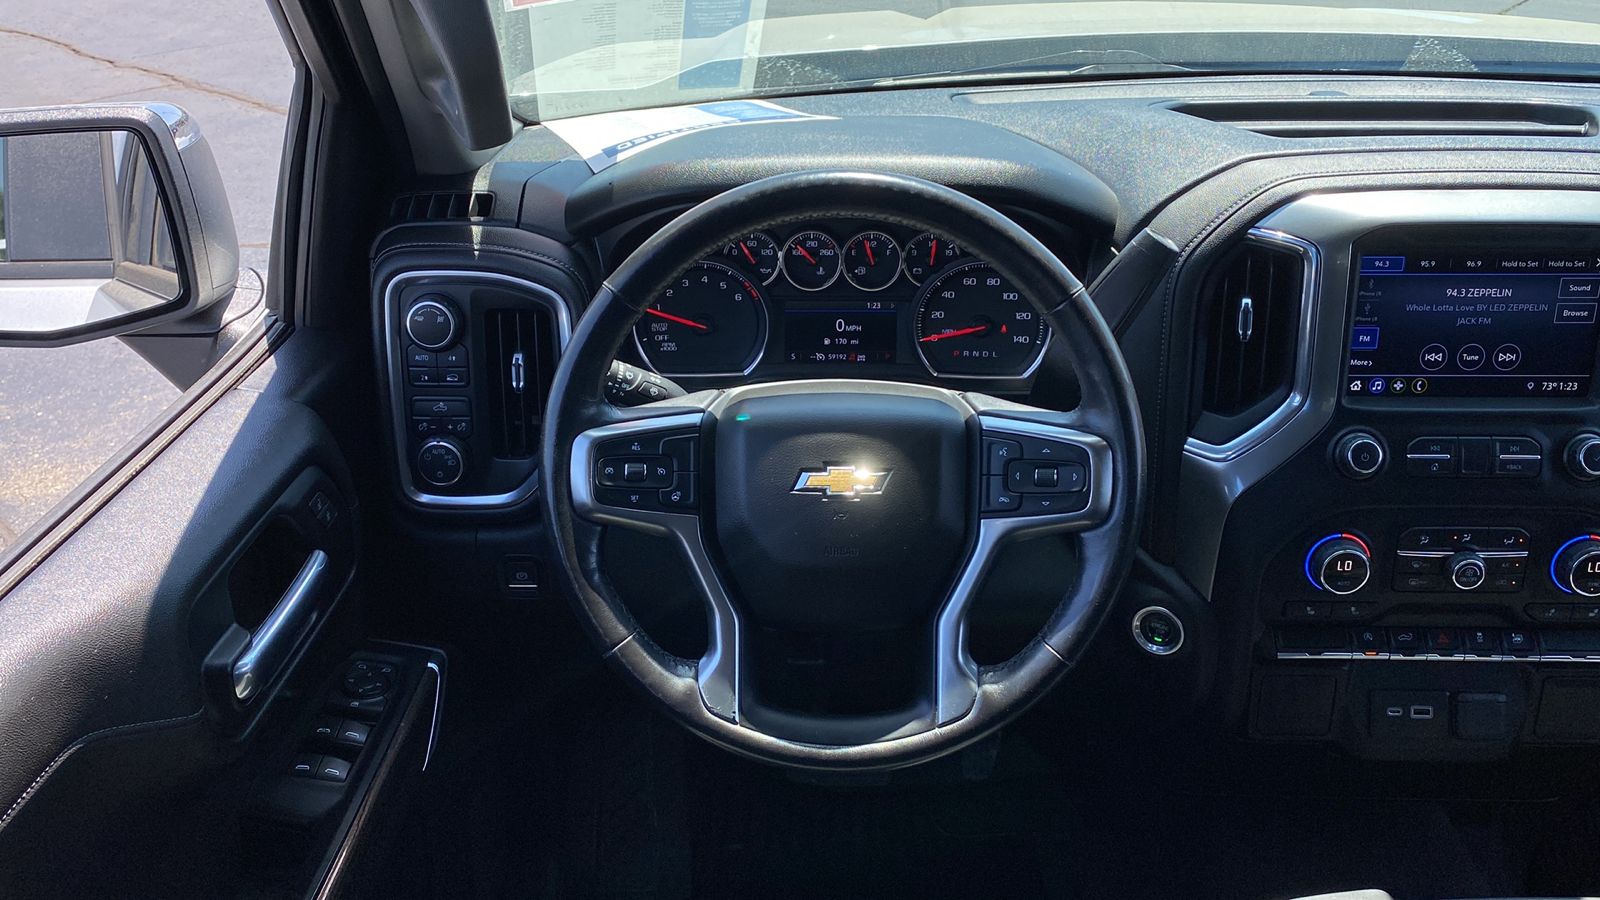 2019 Chevrolet Silverado 1500 LT 9